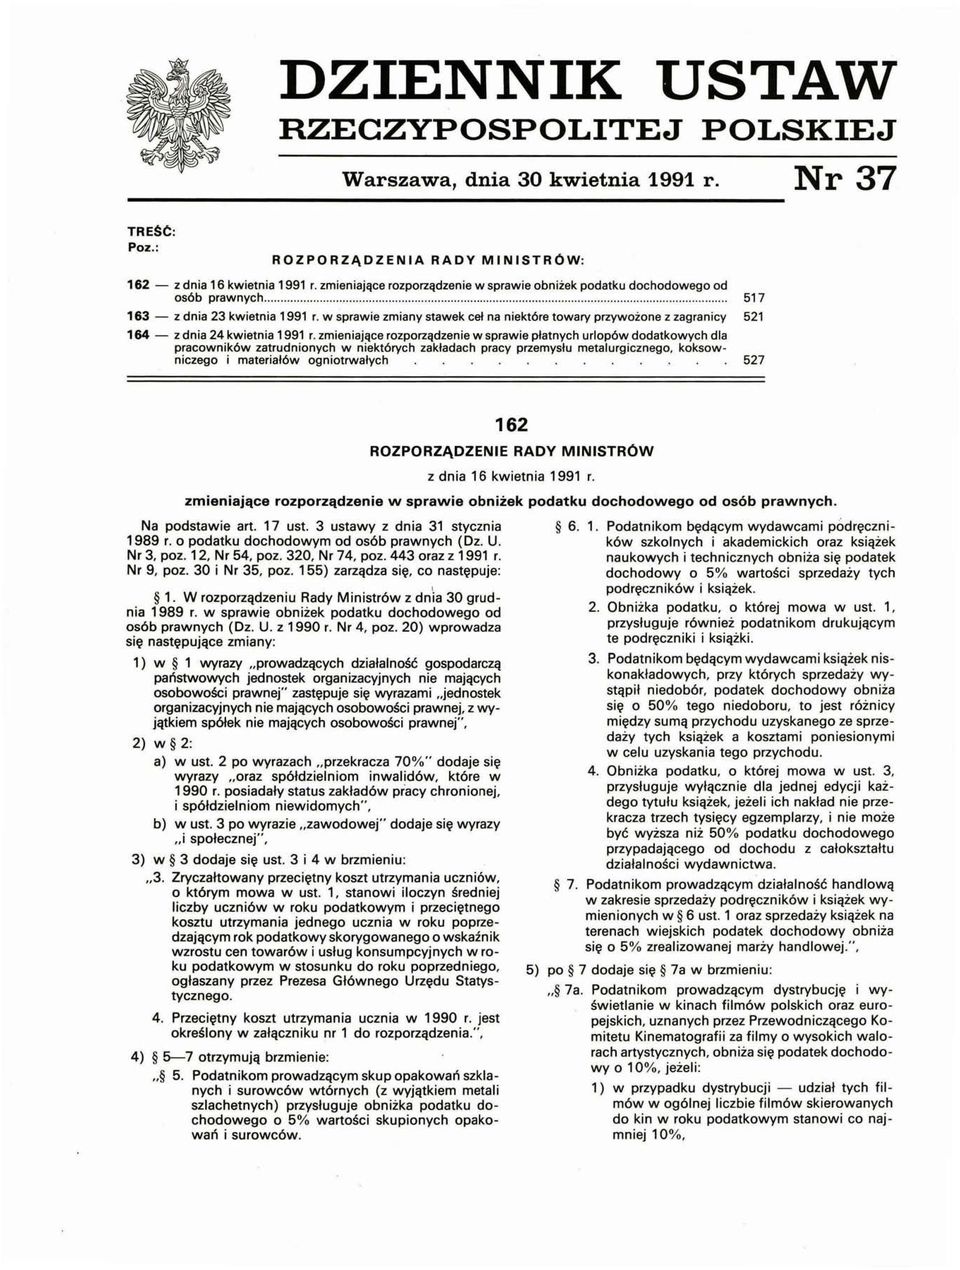 w sprawie zmiany stawek ceł na niektóre towary przywożone z zagranicy 521 164 - z dnia 24 kwietnia 1991 r.